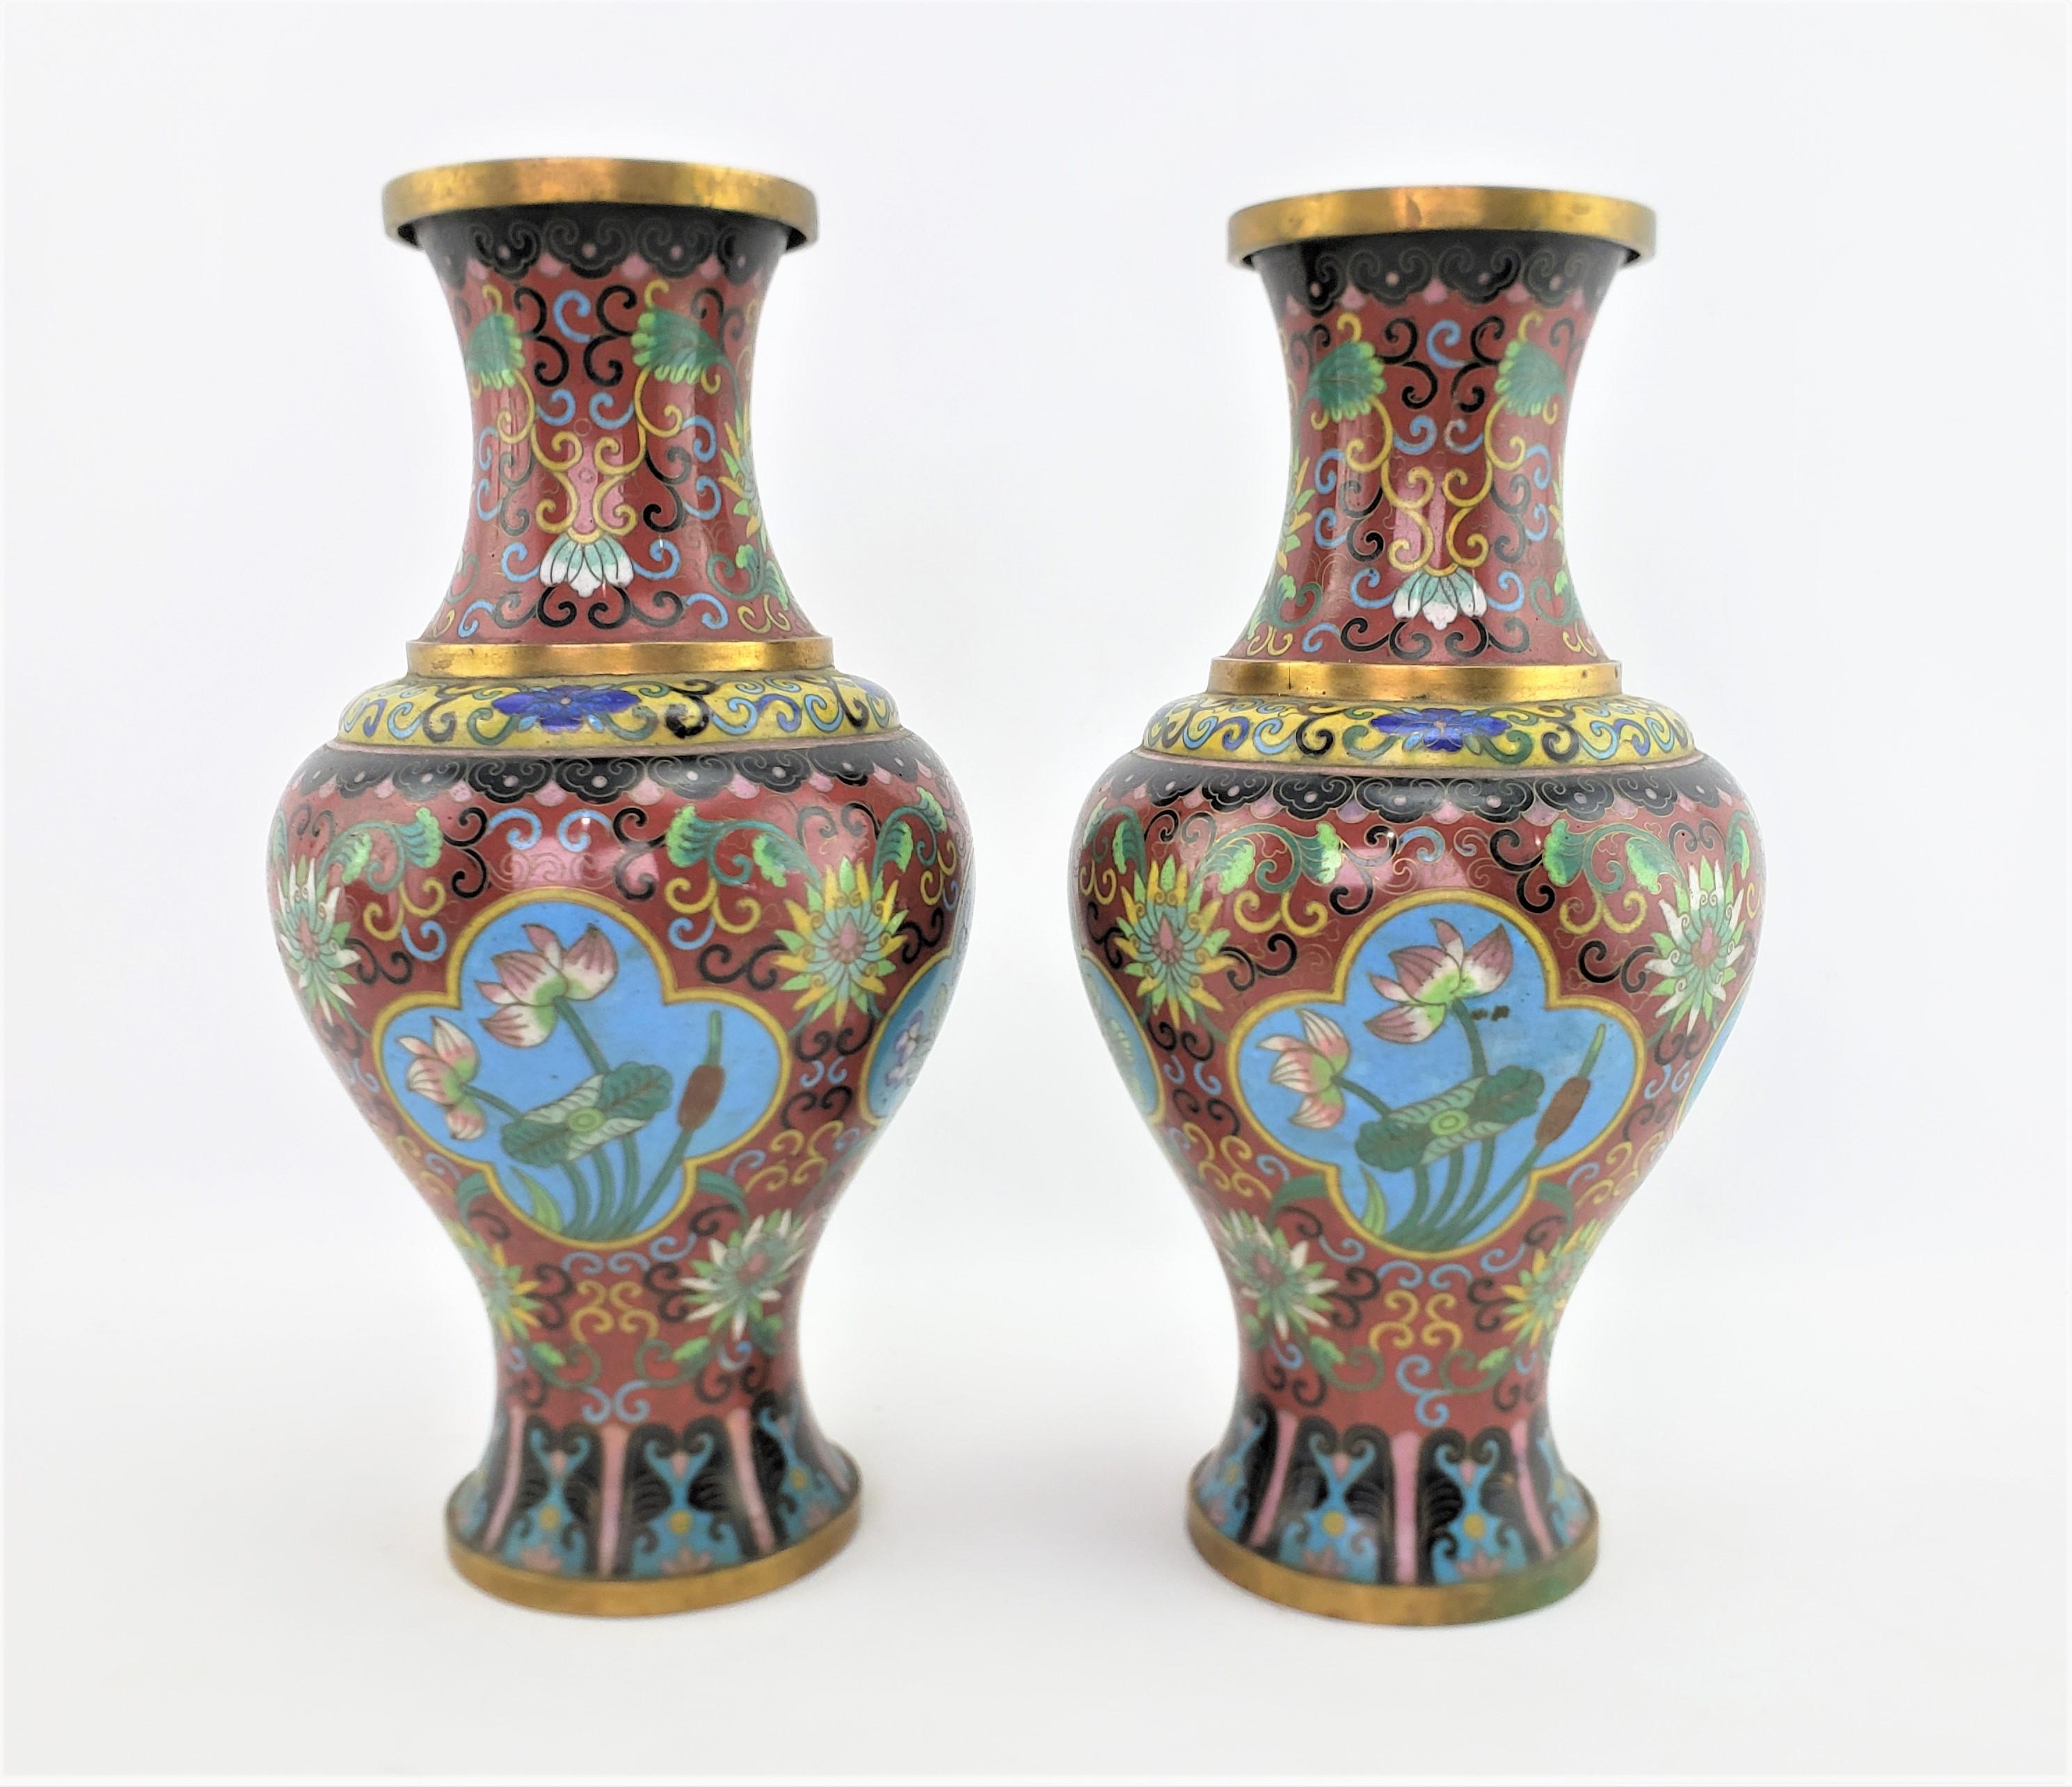 Cette paire de vases cloisonnés anciens est originaire de Chine, à l'époque du début de la République, et réalisée dans le style chinois d'exportation. Ces vases sont réalisés sur un fond bordeaux profond avec des panneaux floraux stylisés et